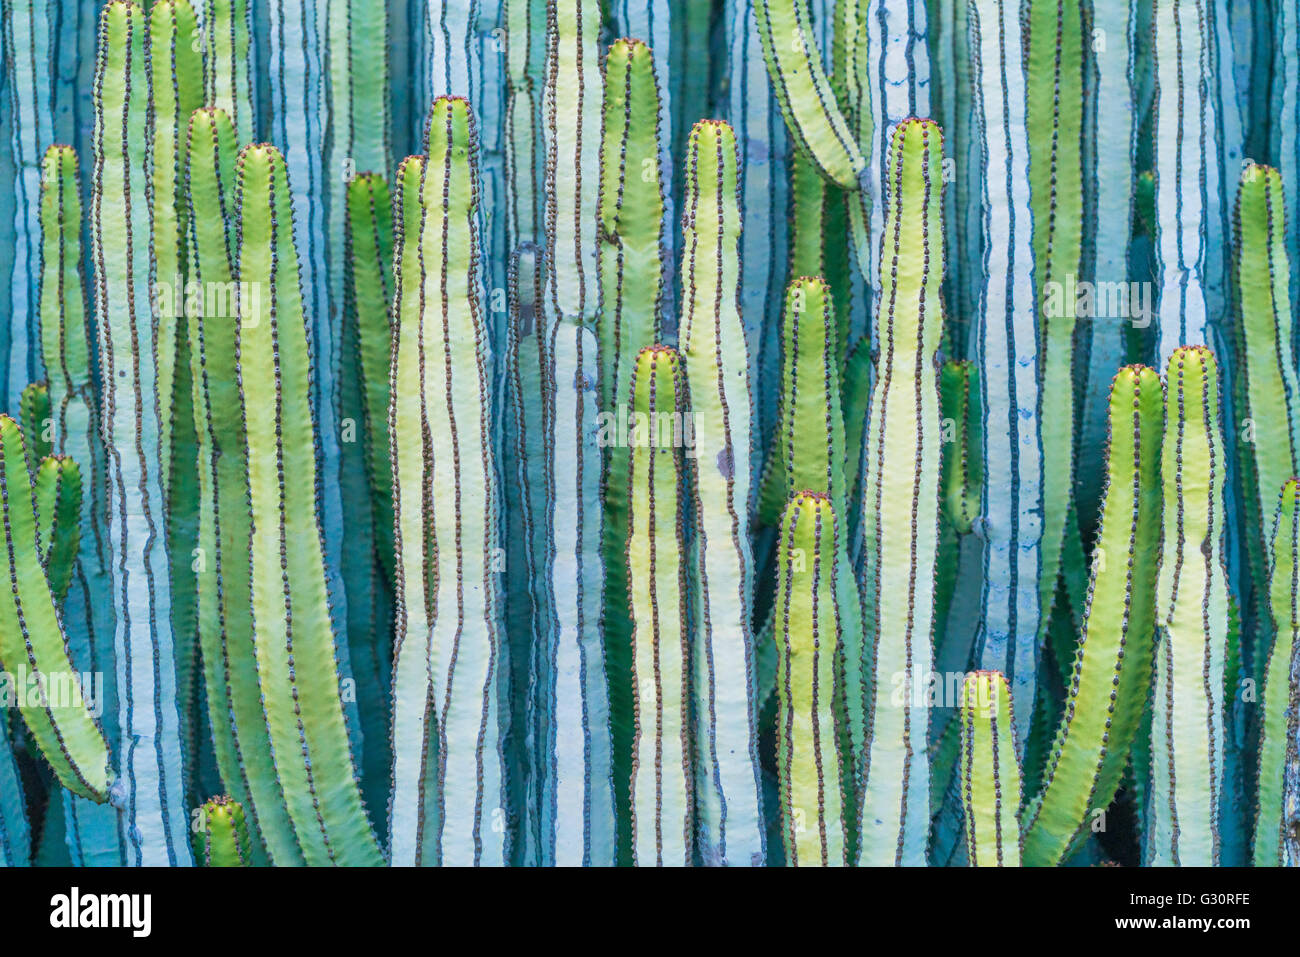 Vue détaillée de l'cactus cardon en été avec de riches couleurs turquoise et vert bleu tourné en Mexique AMÉRIQUE DU SUD Banque D'Images